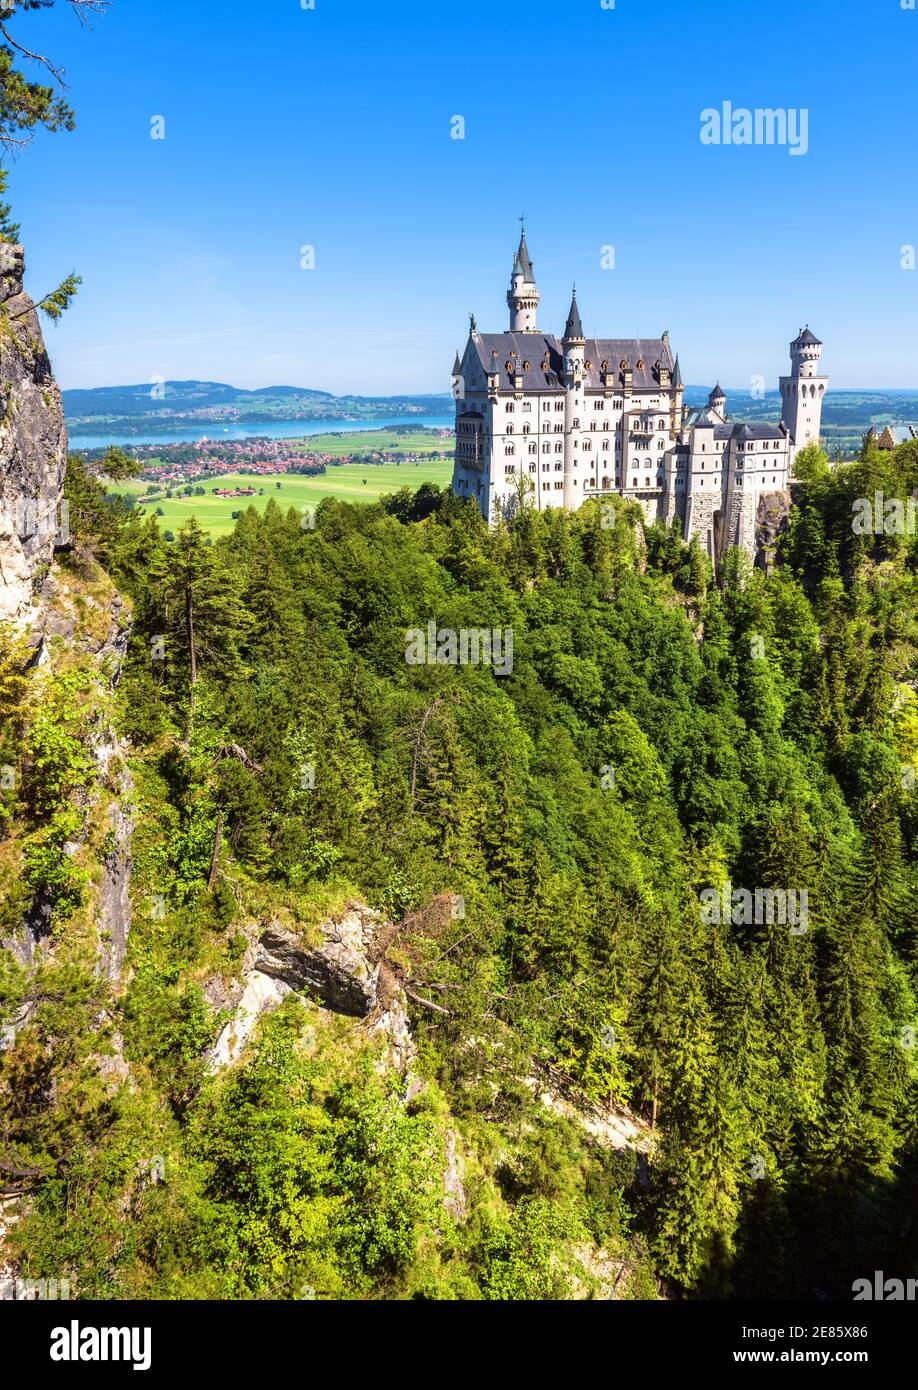 Castello di Neuschwanstein, Germania, Europa. Vista panoramica verticale del castello fiabesco nelle vicinanze di Monaco, famosa attrazione turistica delle Alpi bavaresi. Bello Foto Stock